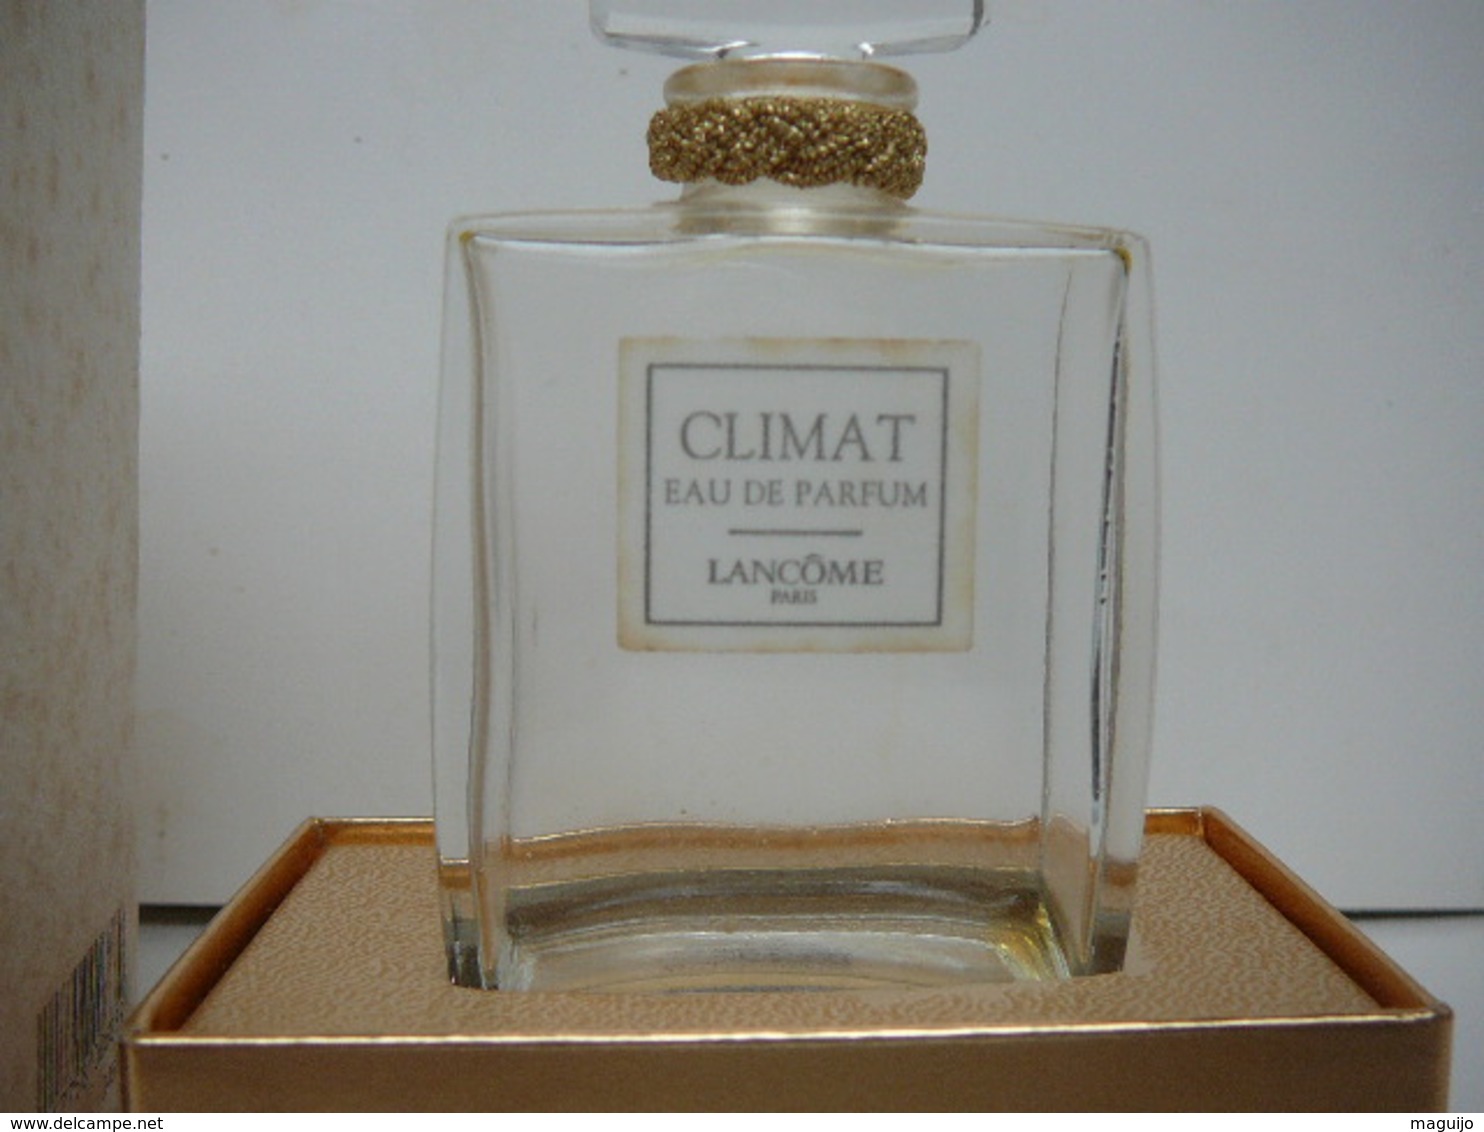 LANCOME " CLIMAT" FLACON ( Pas Vapo) TRES BON ETAT MAIS  VIDE   LIRE ET VOIR !! - Miniatures Femmes (avec Boite)